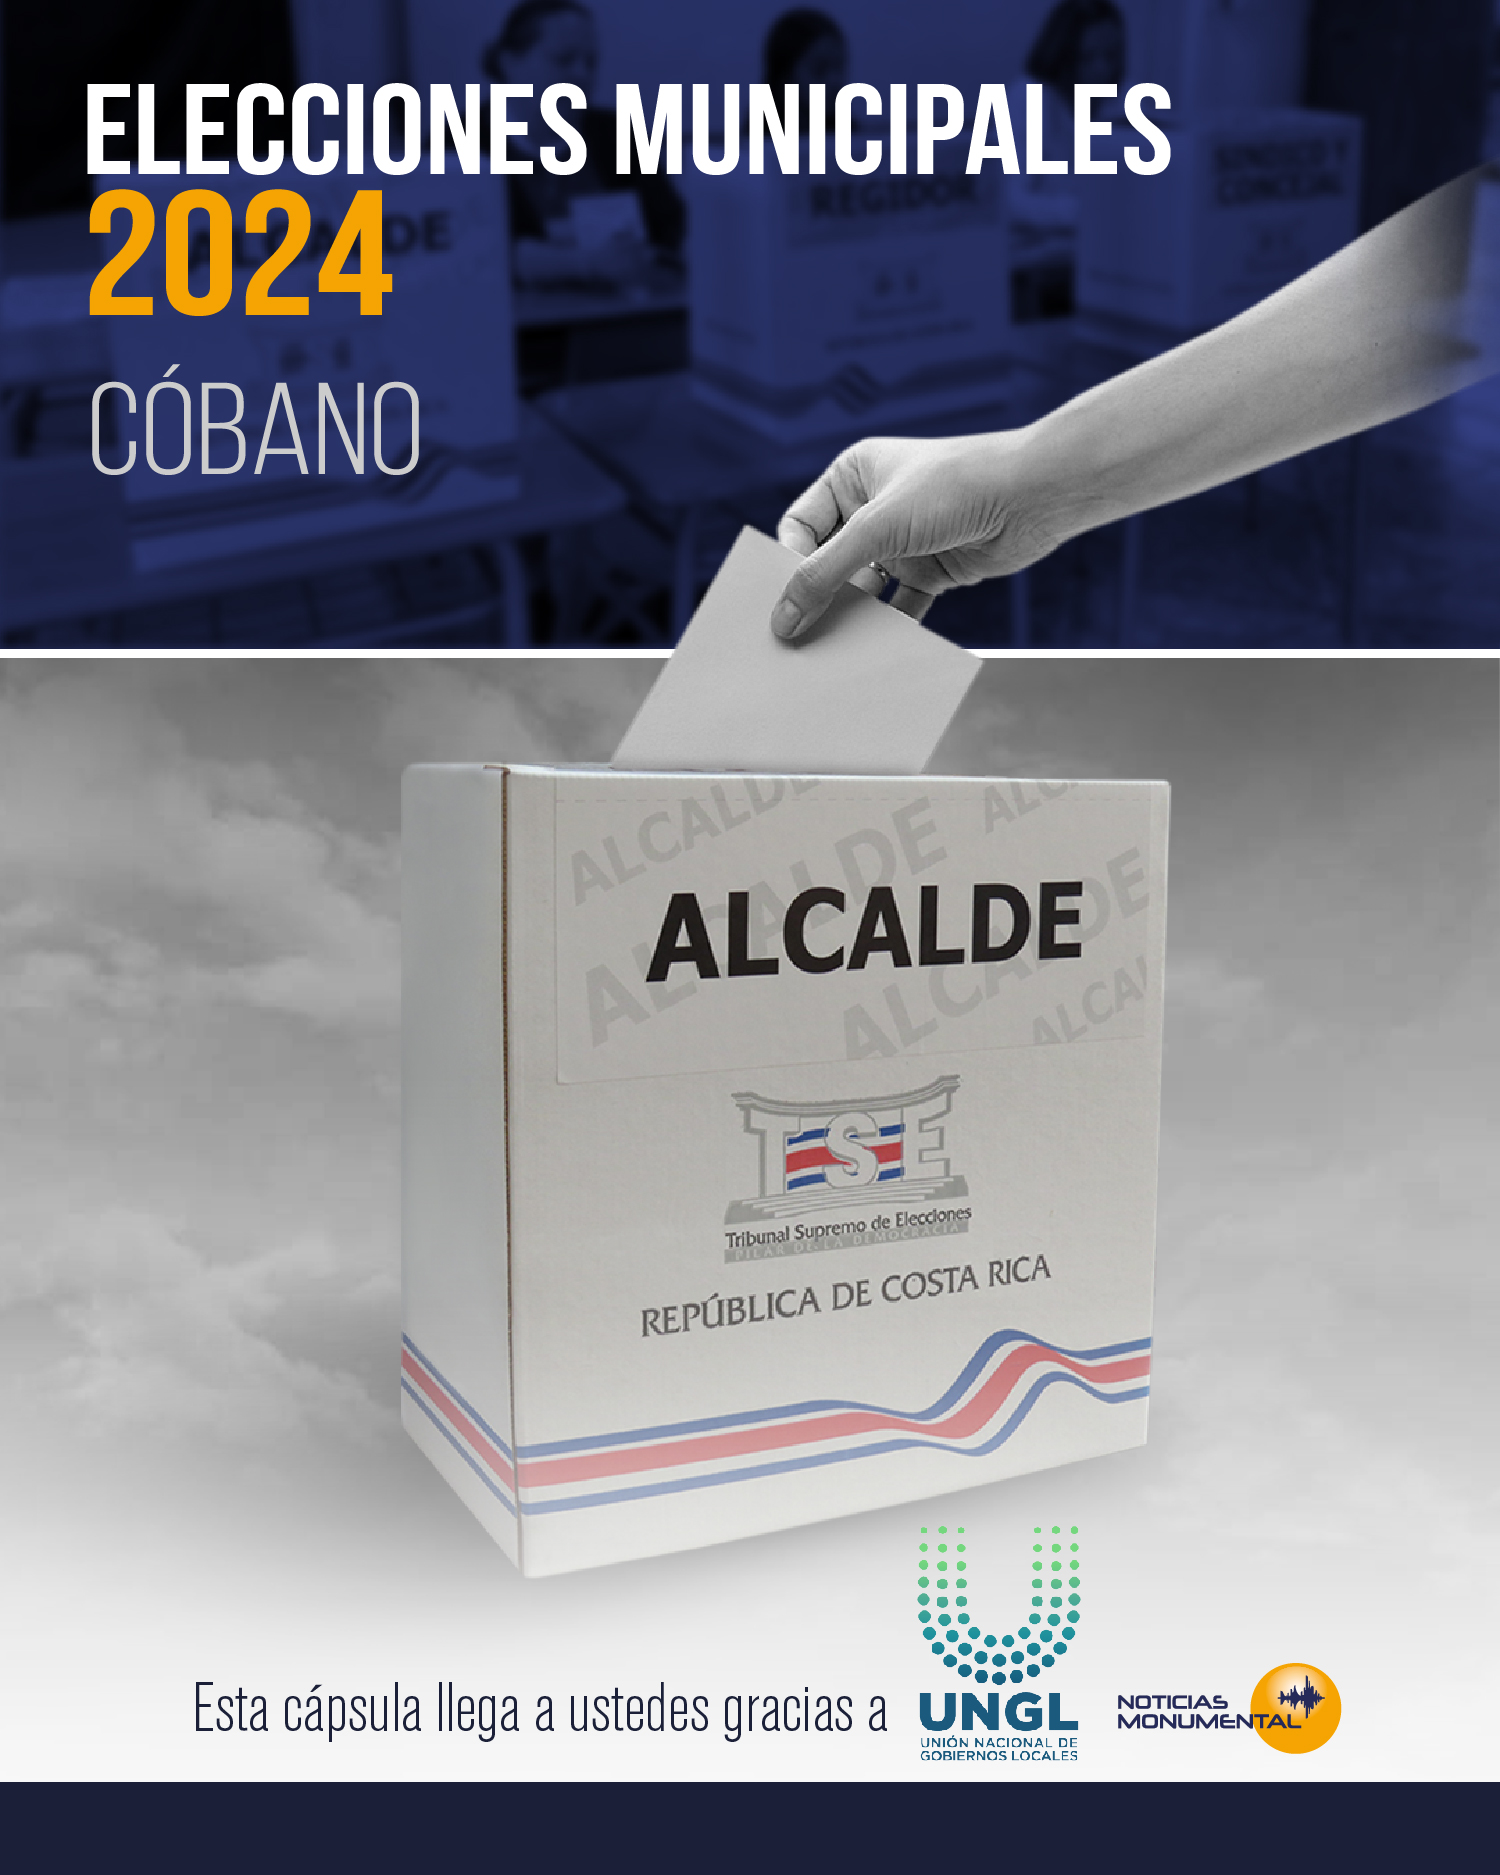 Elecciones Municipales 2024: Conozcamos el concejo de distrito de Cóbano y quienes aspiran a liderarlo